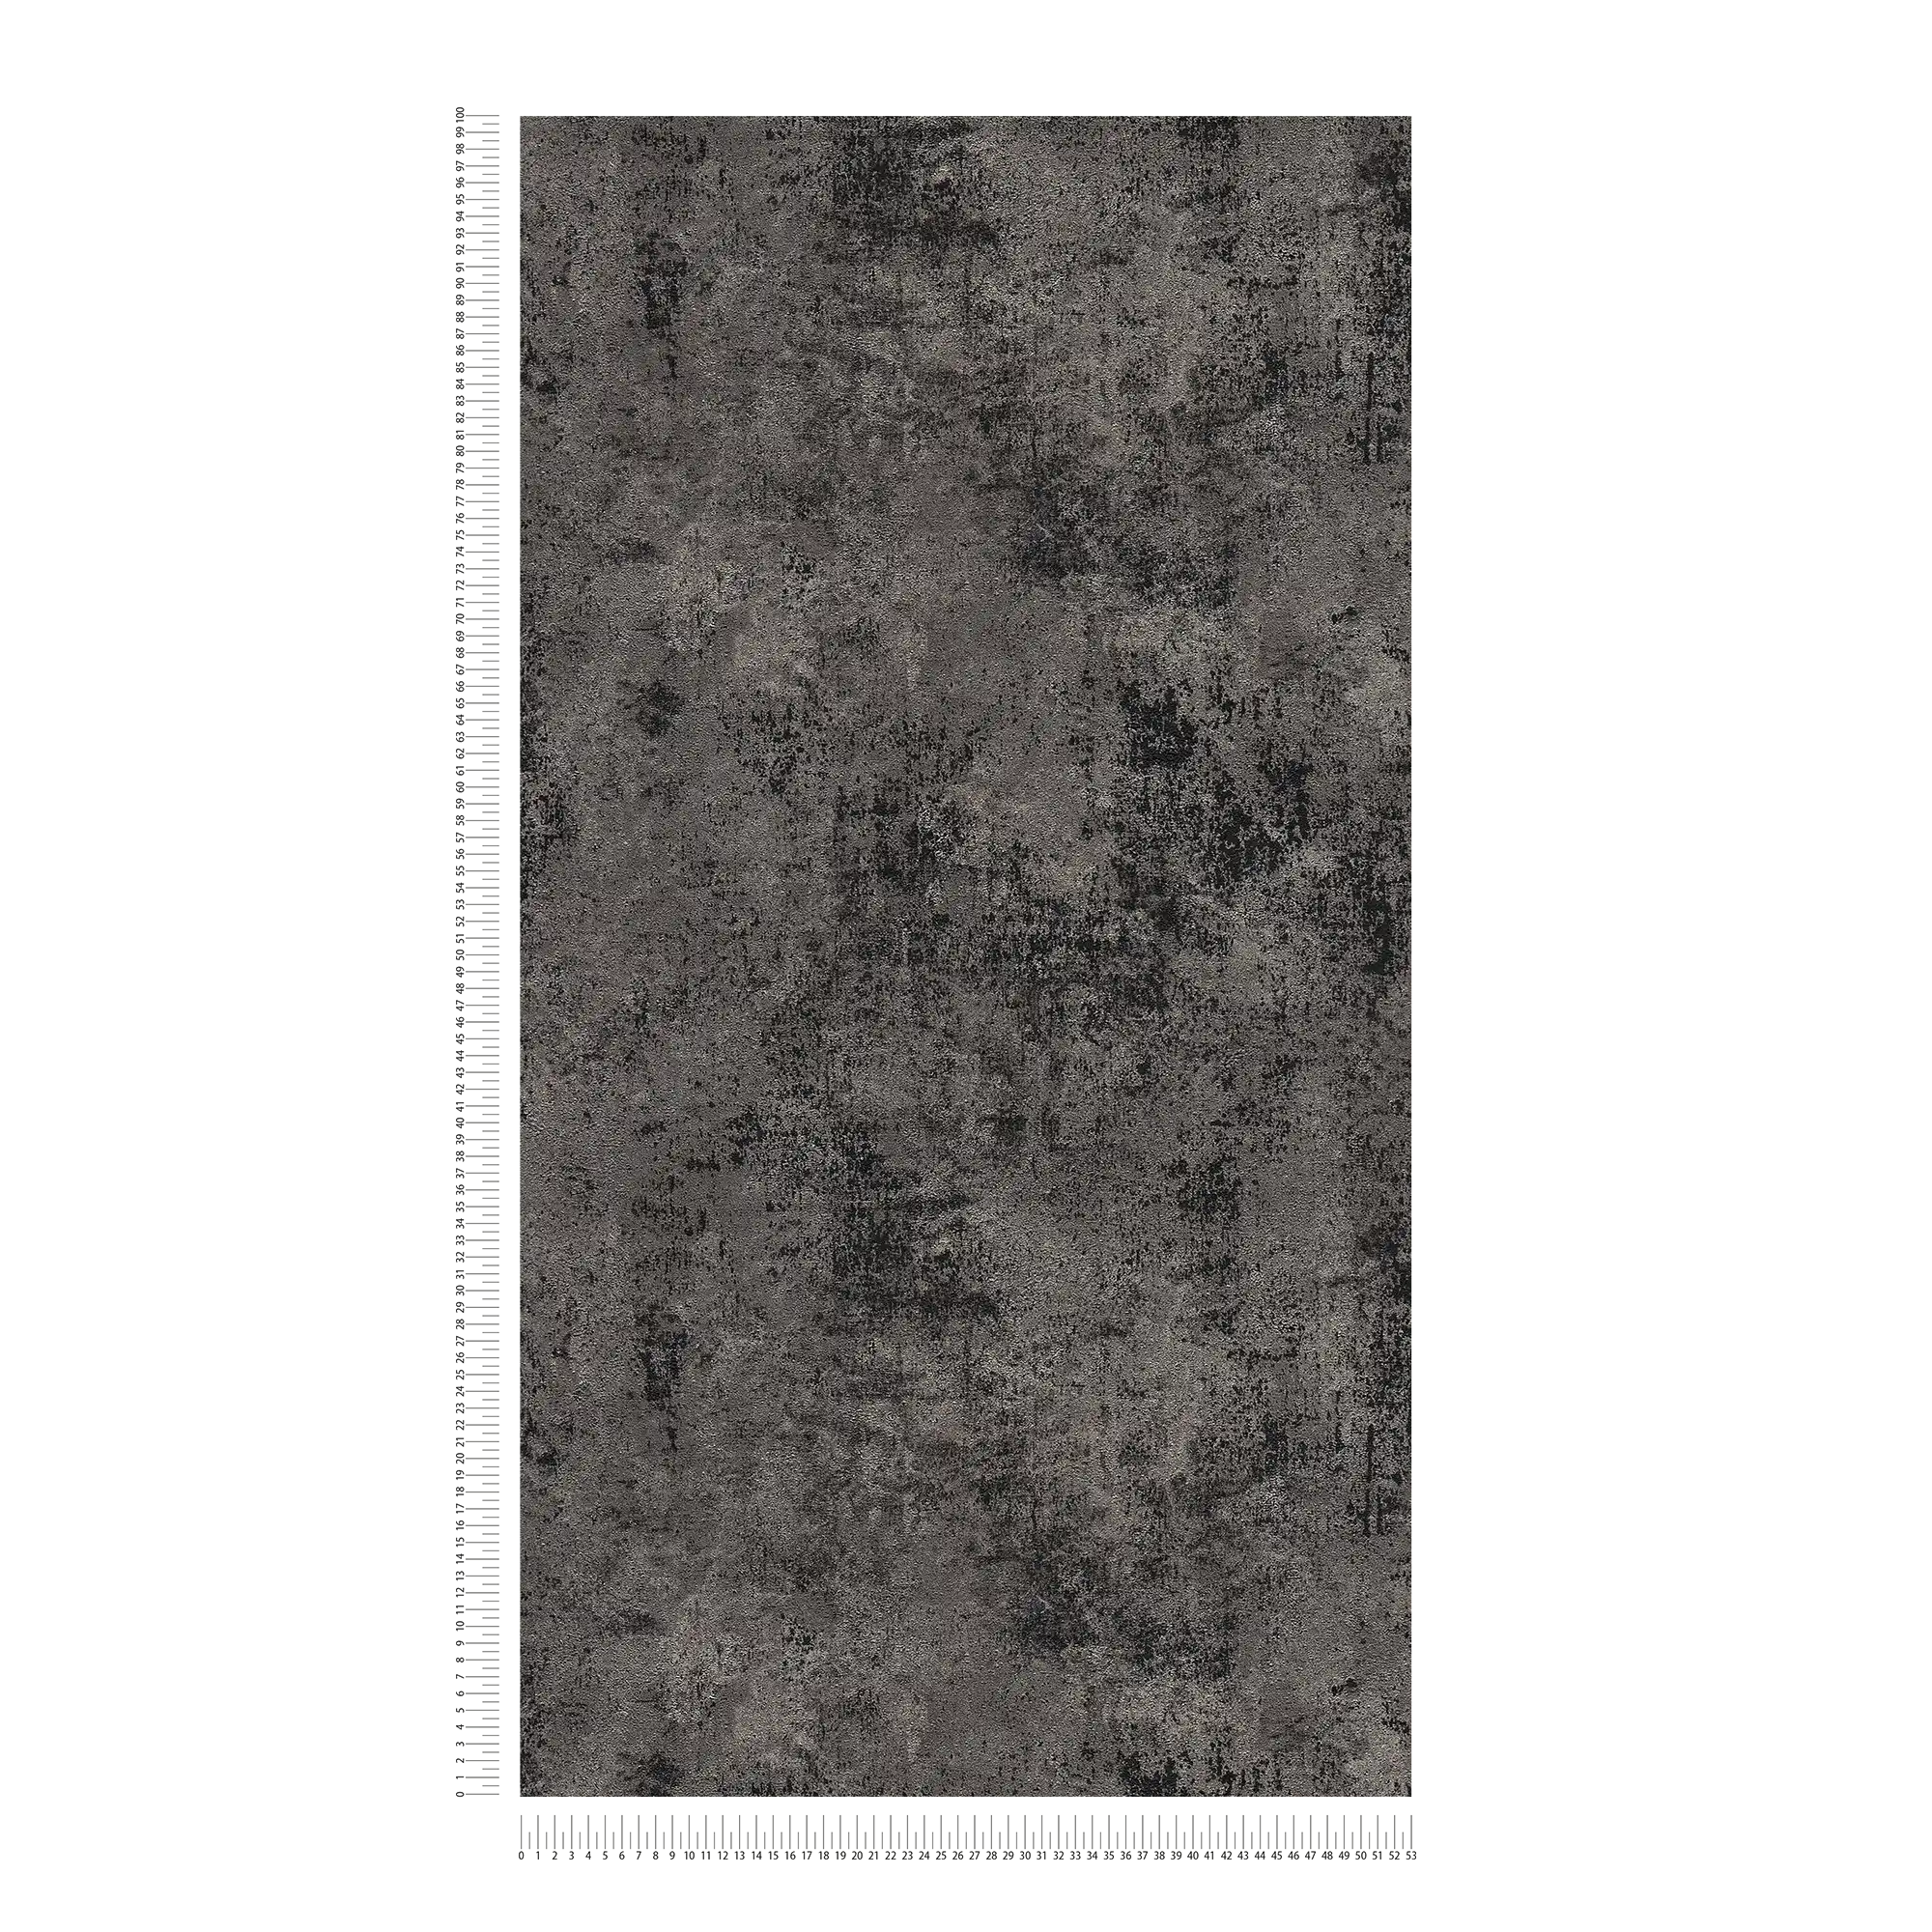             Carta da parati scura in tessuto non tessuto struttura rustica - nero, argento
        